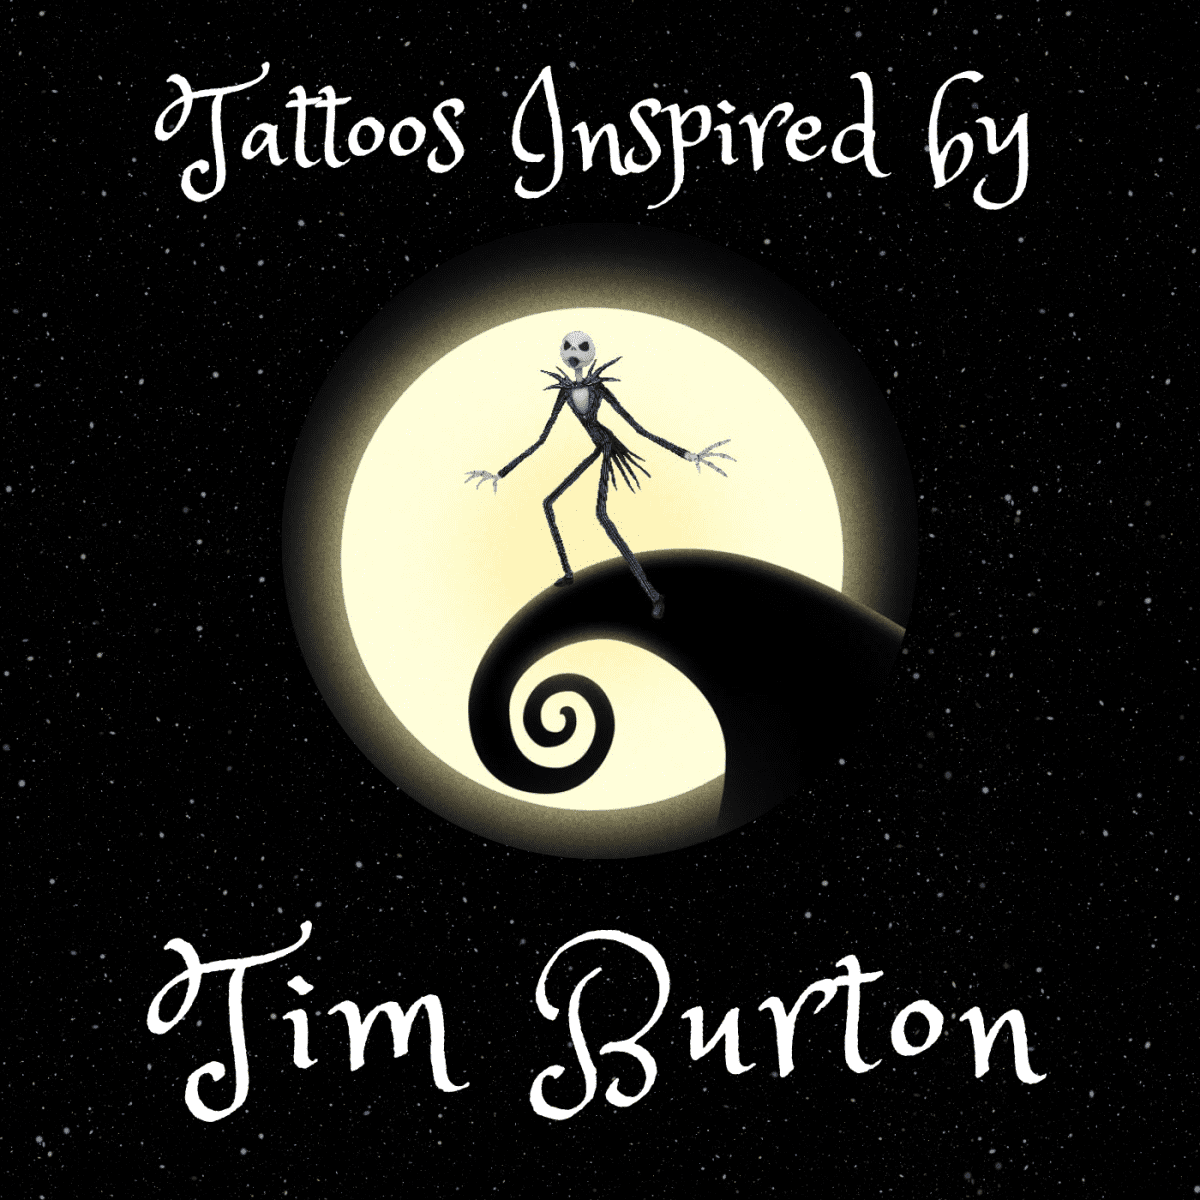 Tim Burton Tattoo Design 2 by lizzybooth on DeviantArt